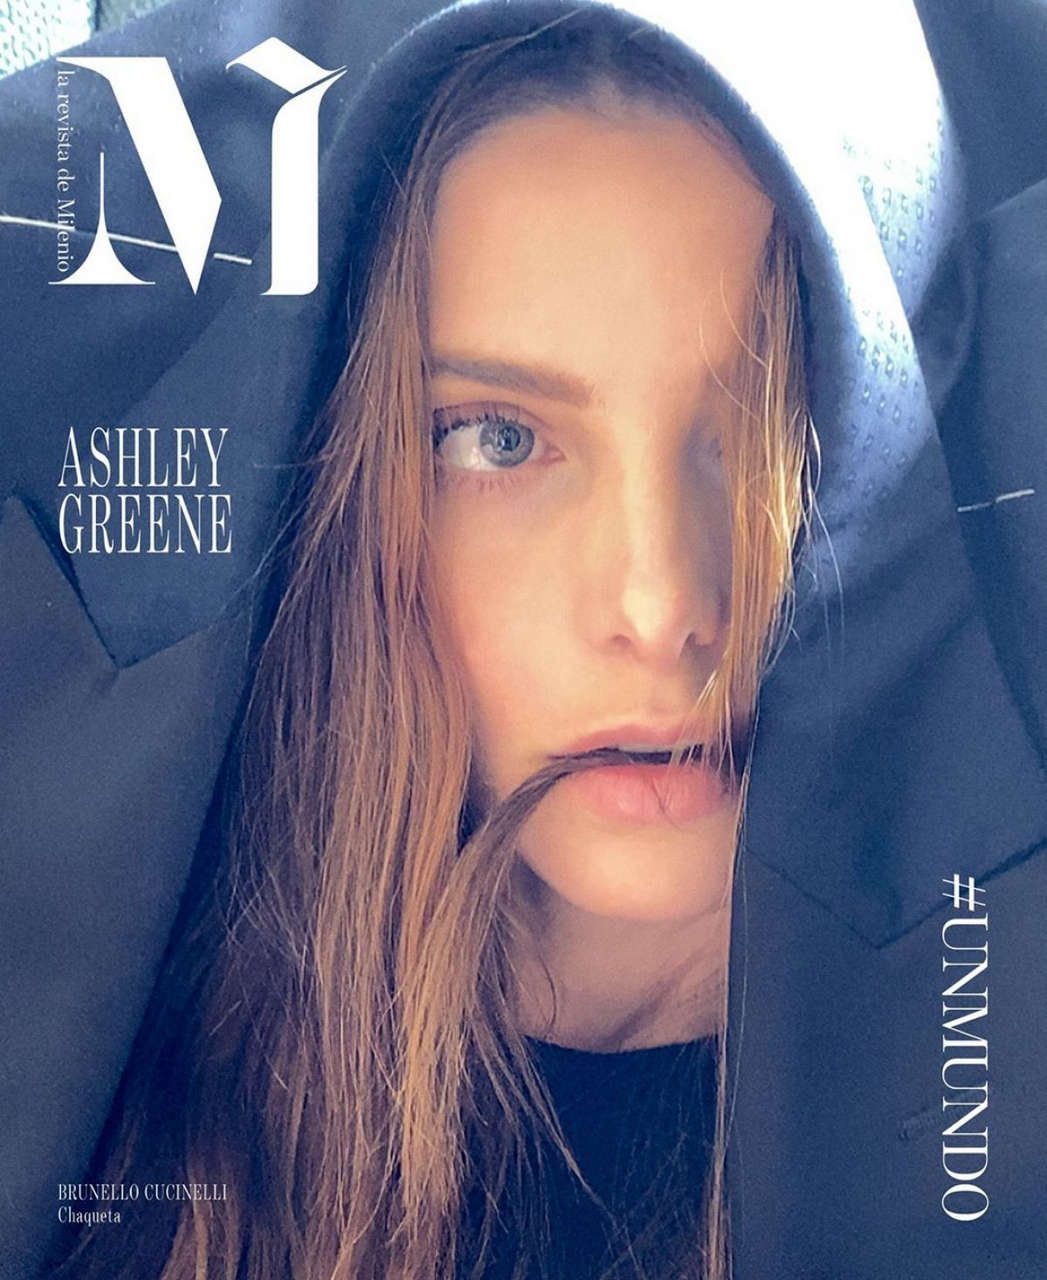 Ashley Greene For Revista De Milenio Issue